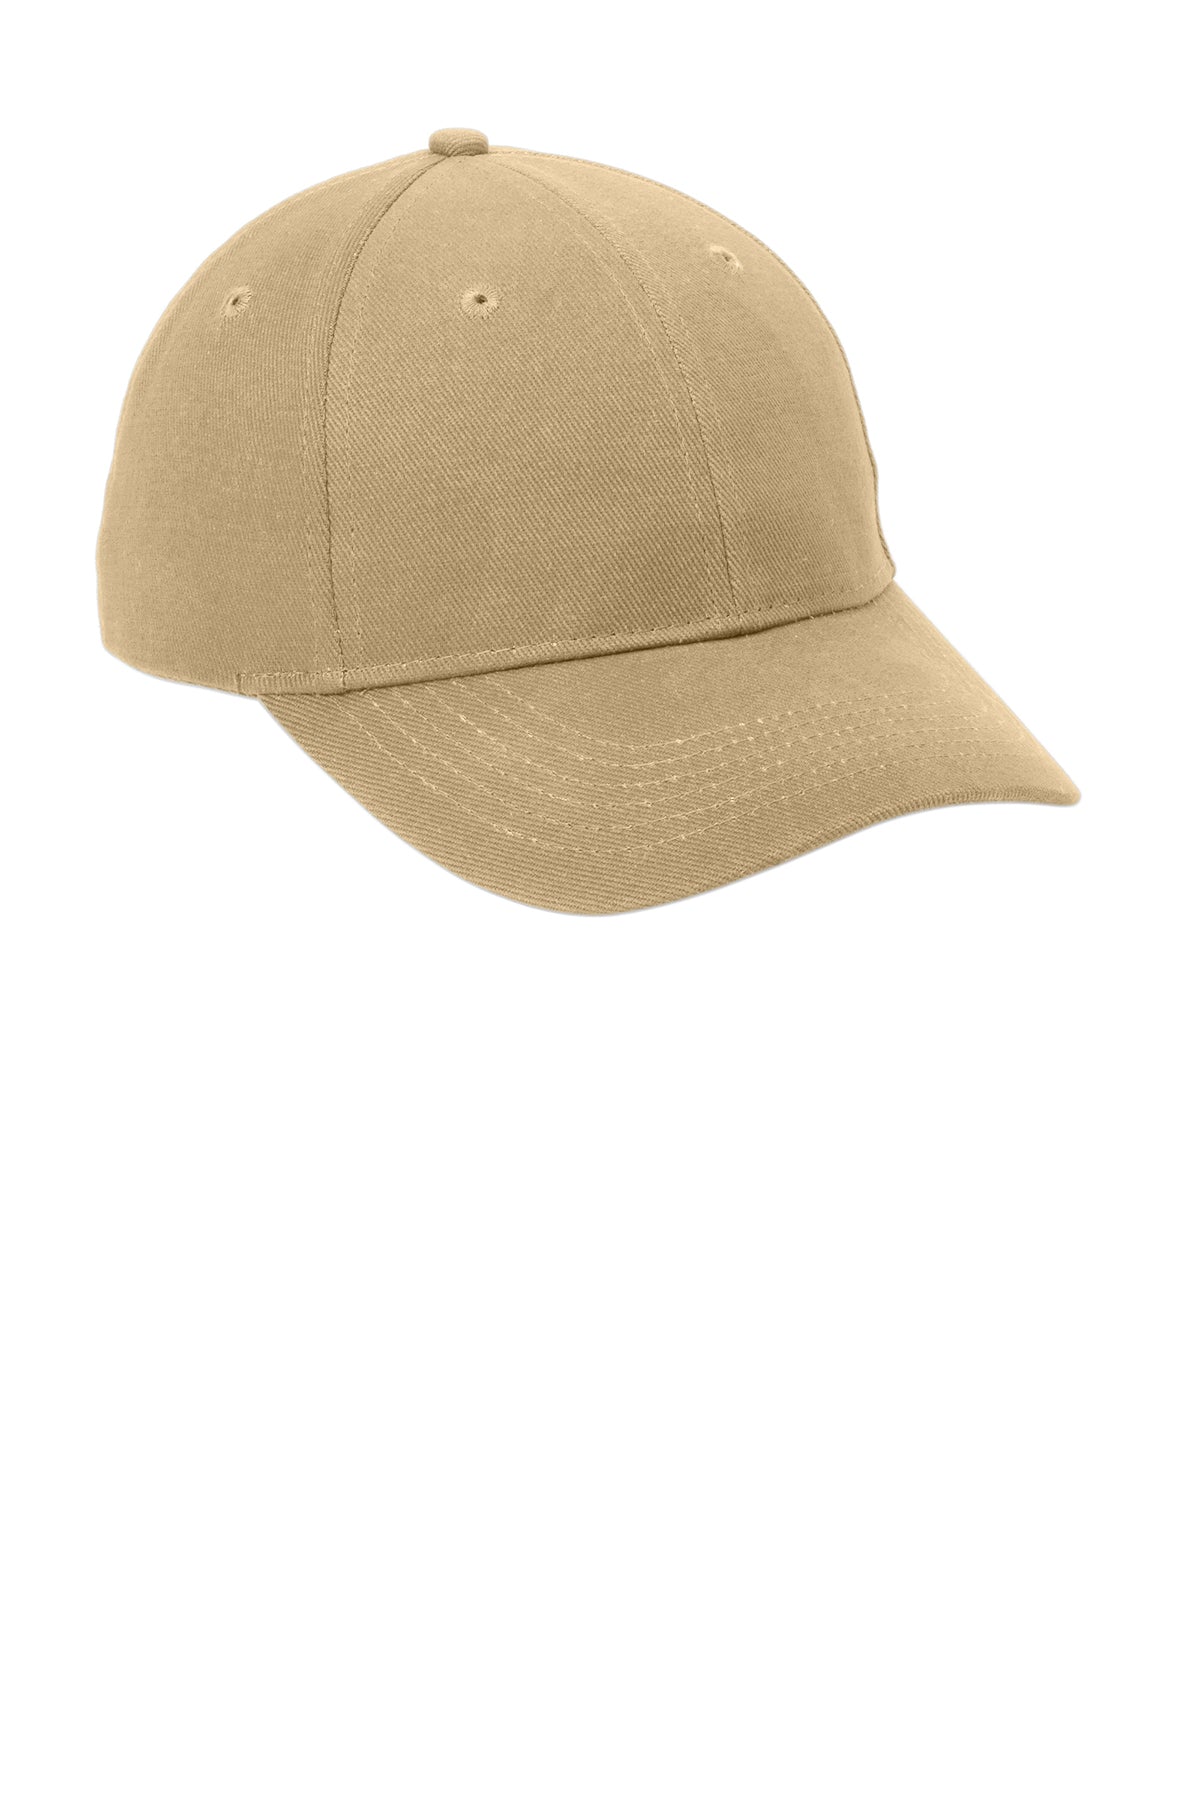 Port & Company Brushed Twill Customized Caps, Khaki